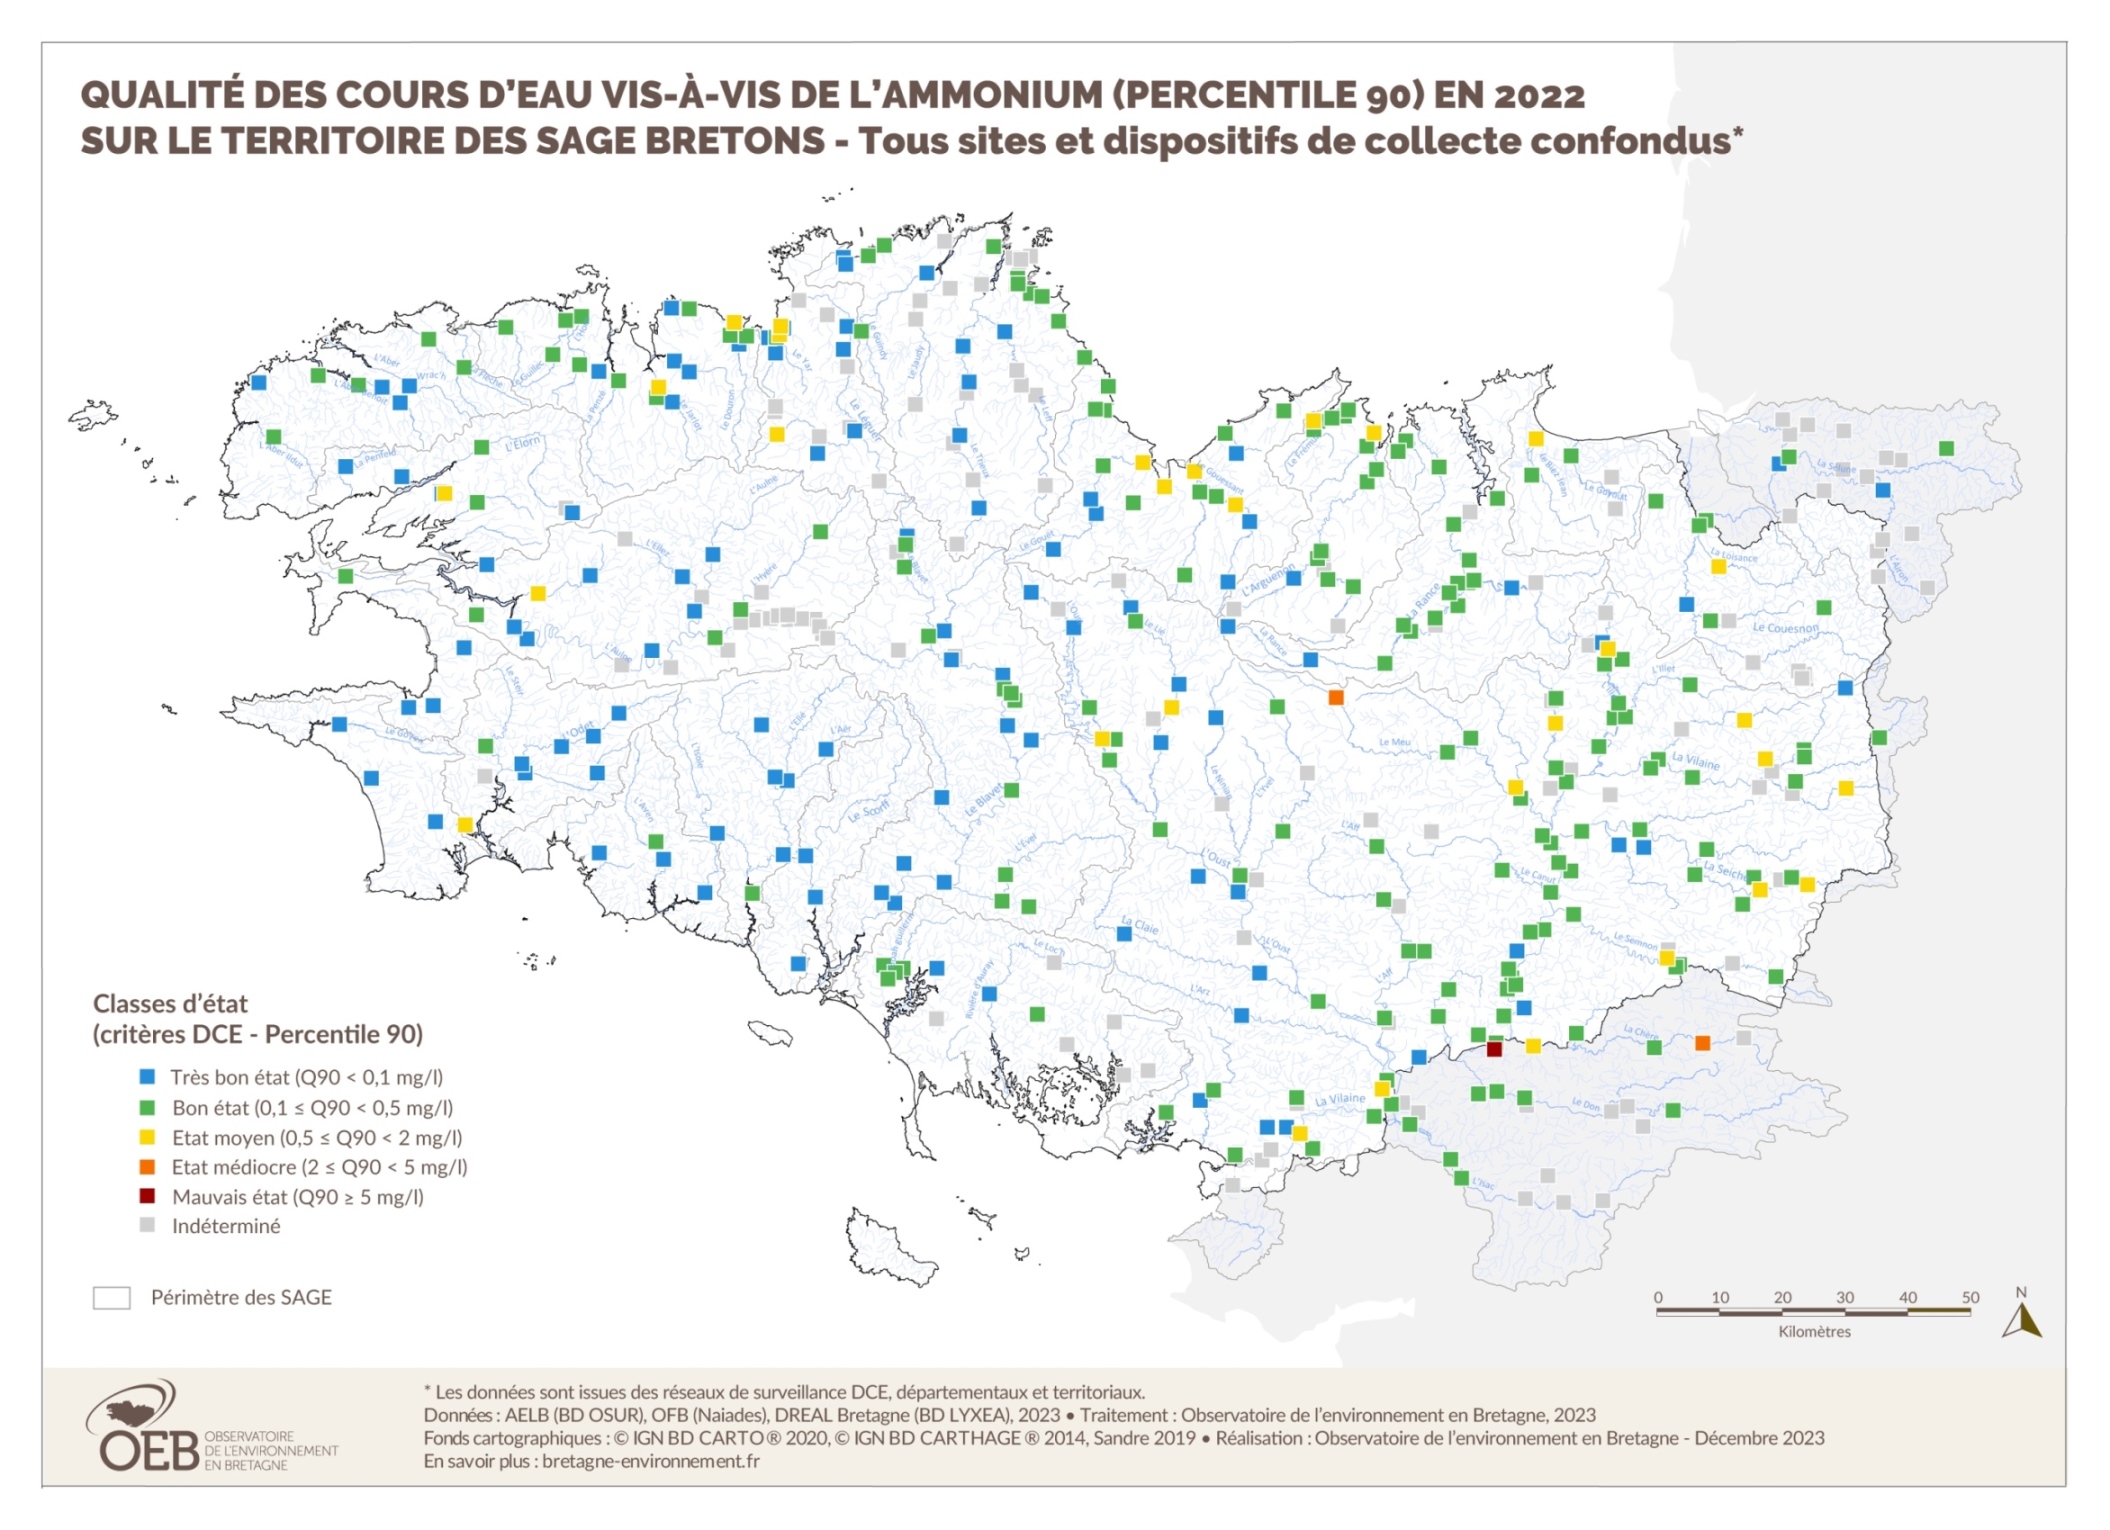 Qualité des cours d'eau bretons vis-à-vis l'ammonium (Q90) - année hydrologique 2011/2012